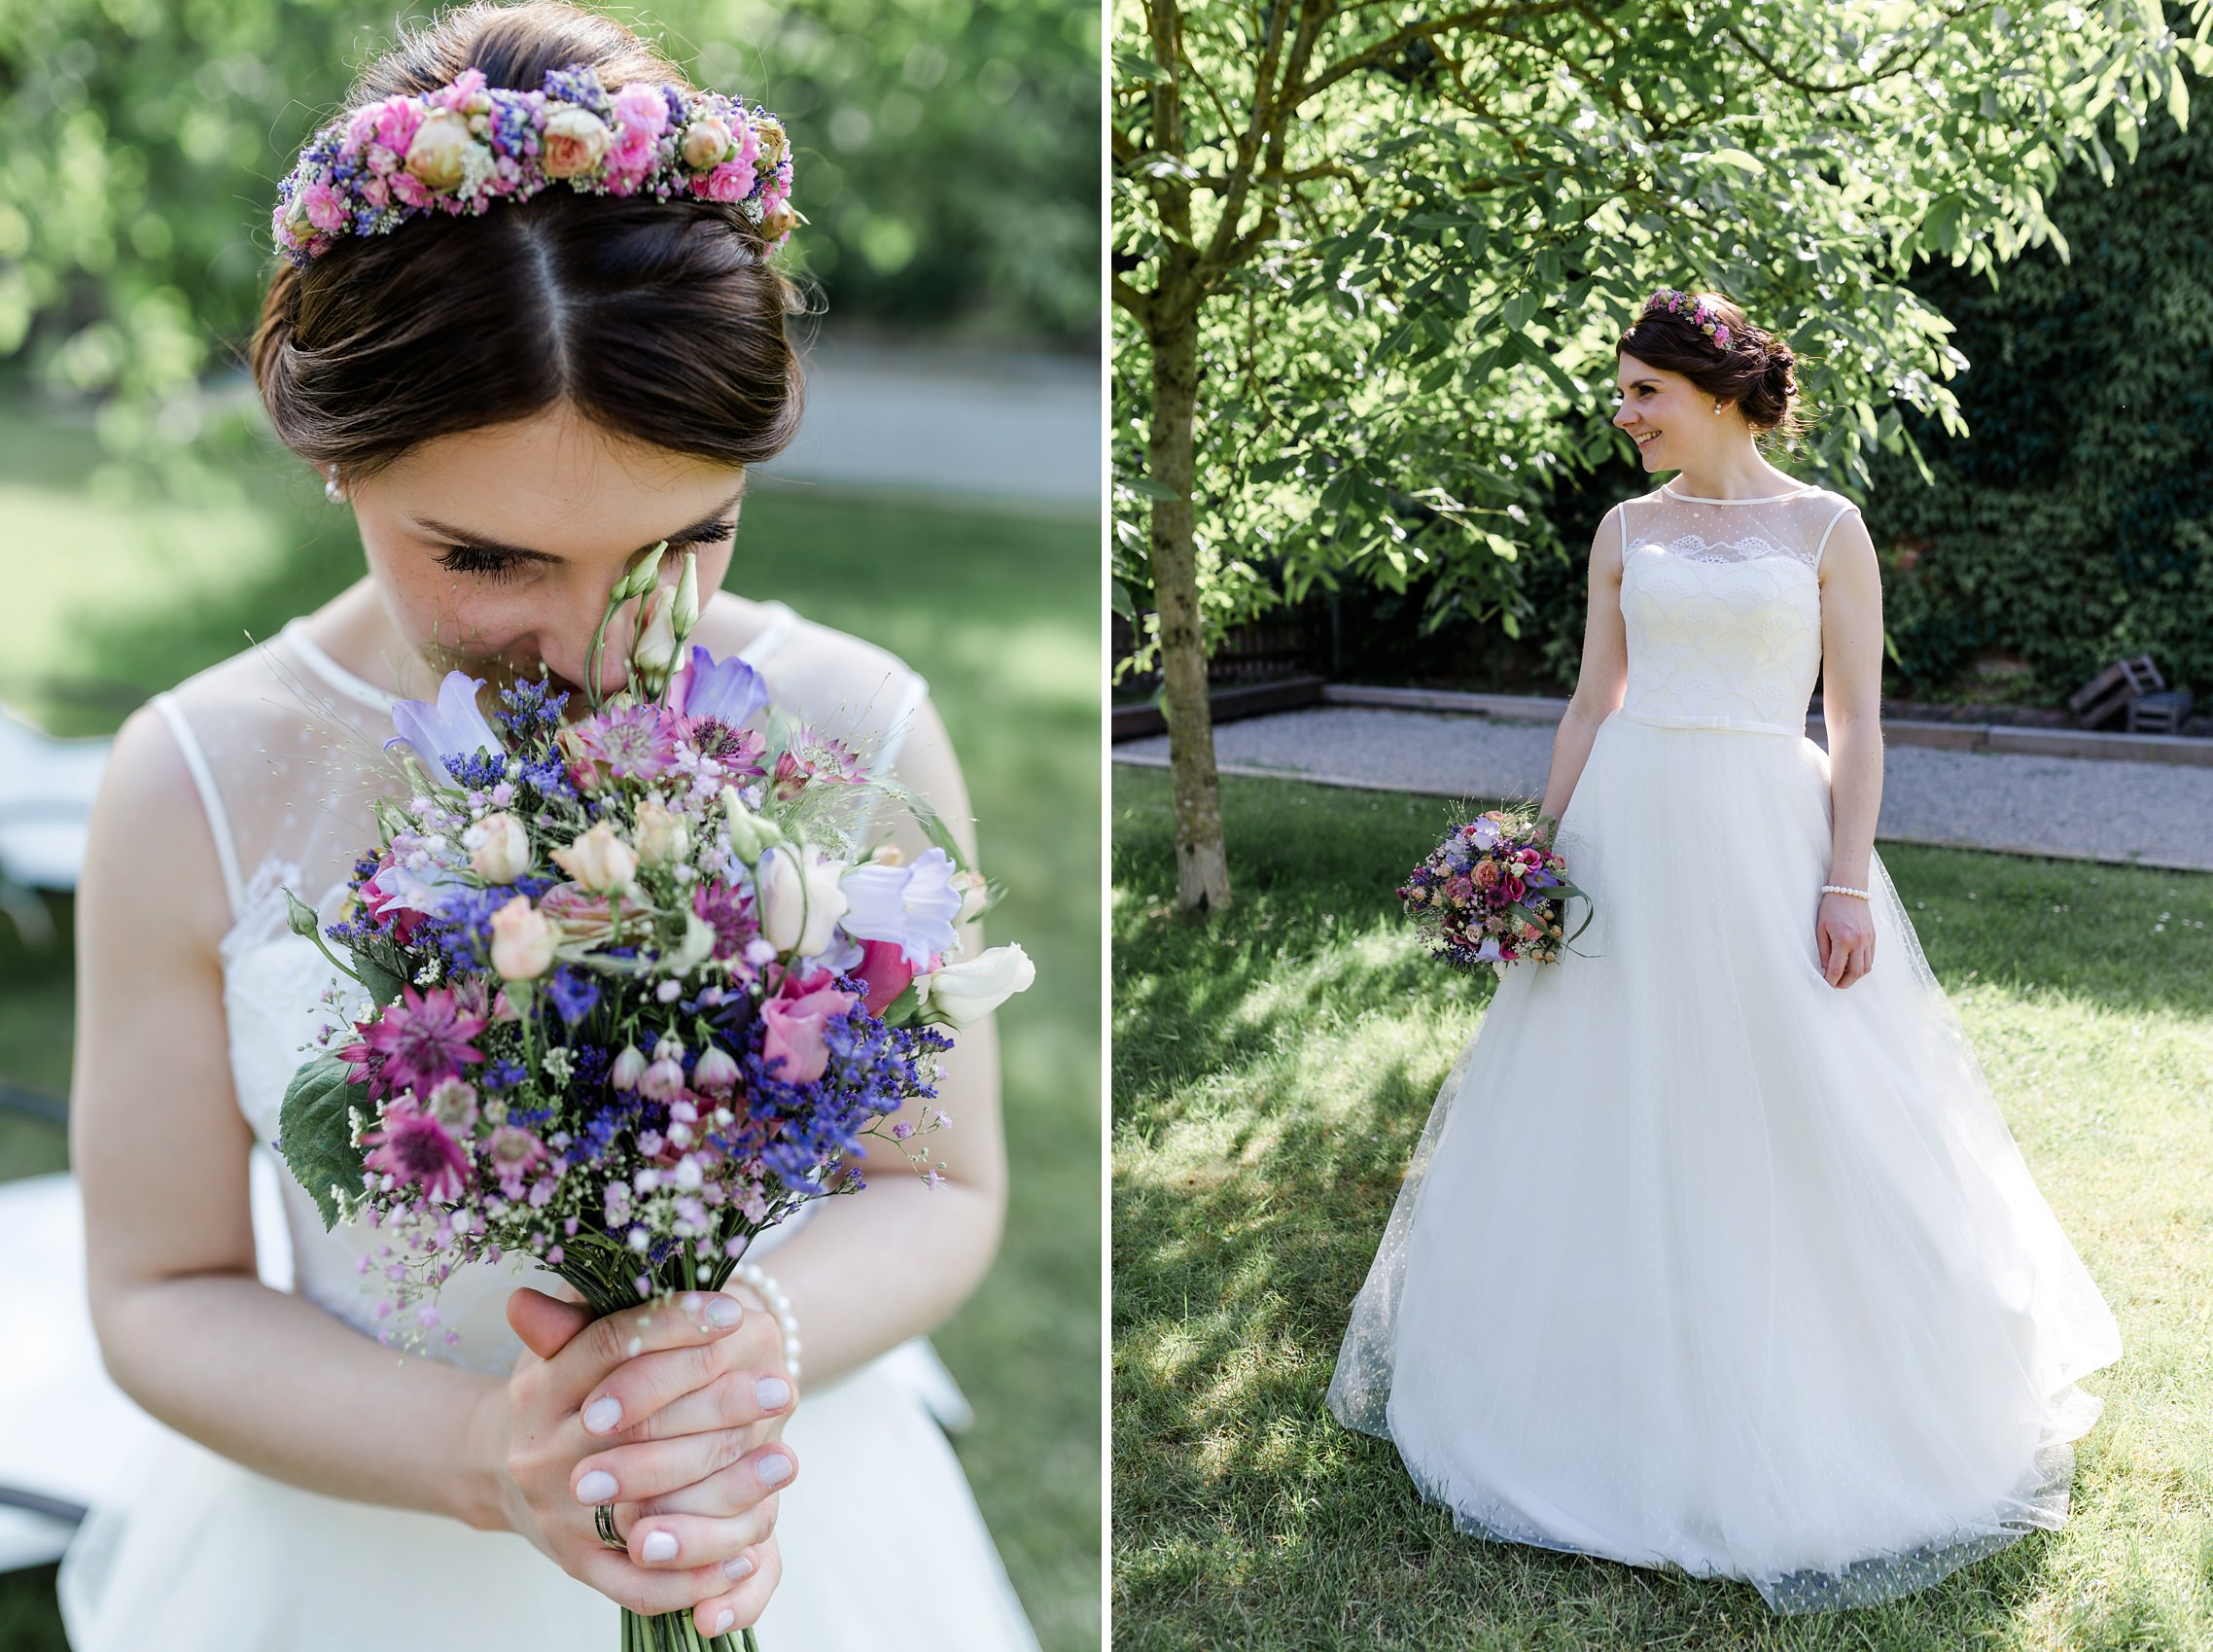 Portrait der Braut mit ihrem Blumenschmuck und dem Hochzeitskleid